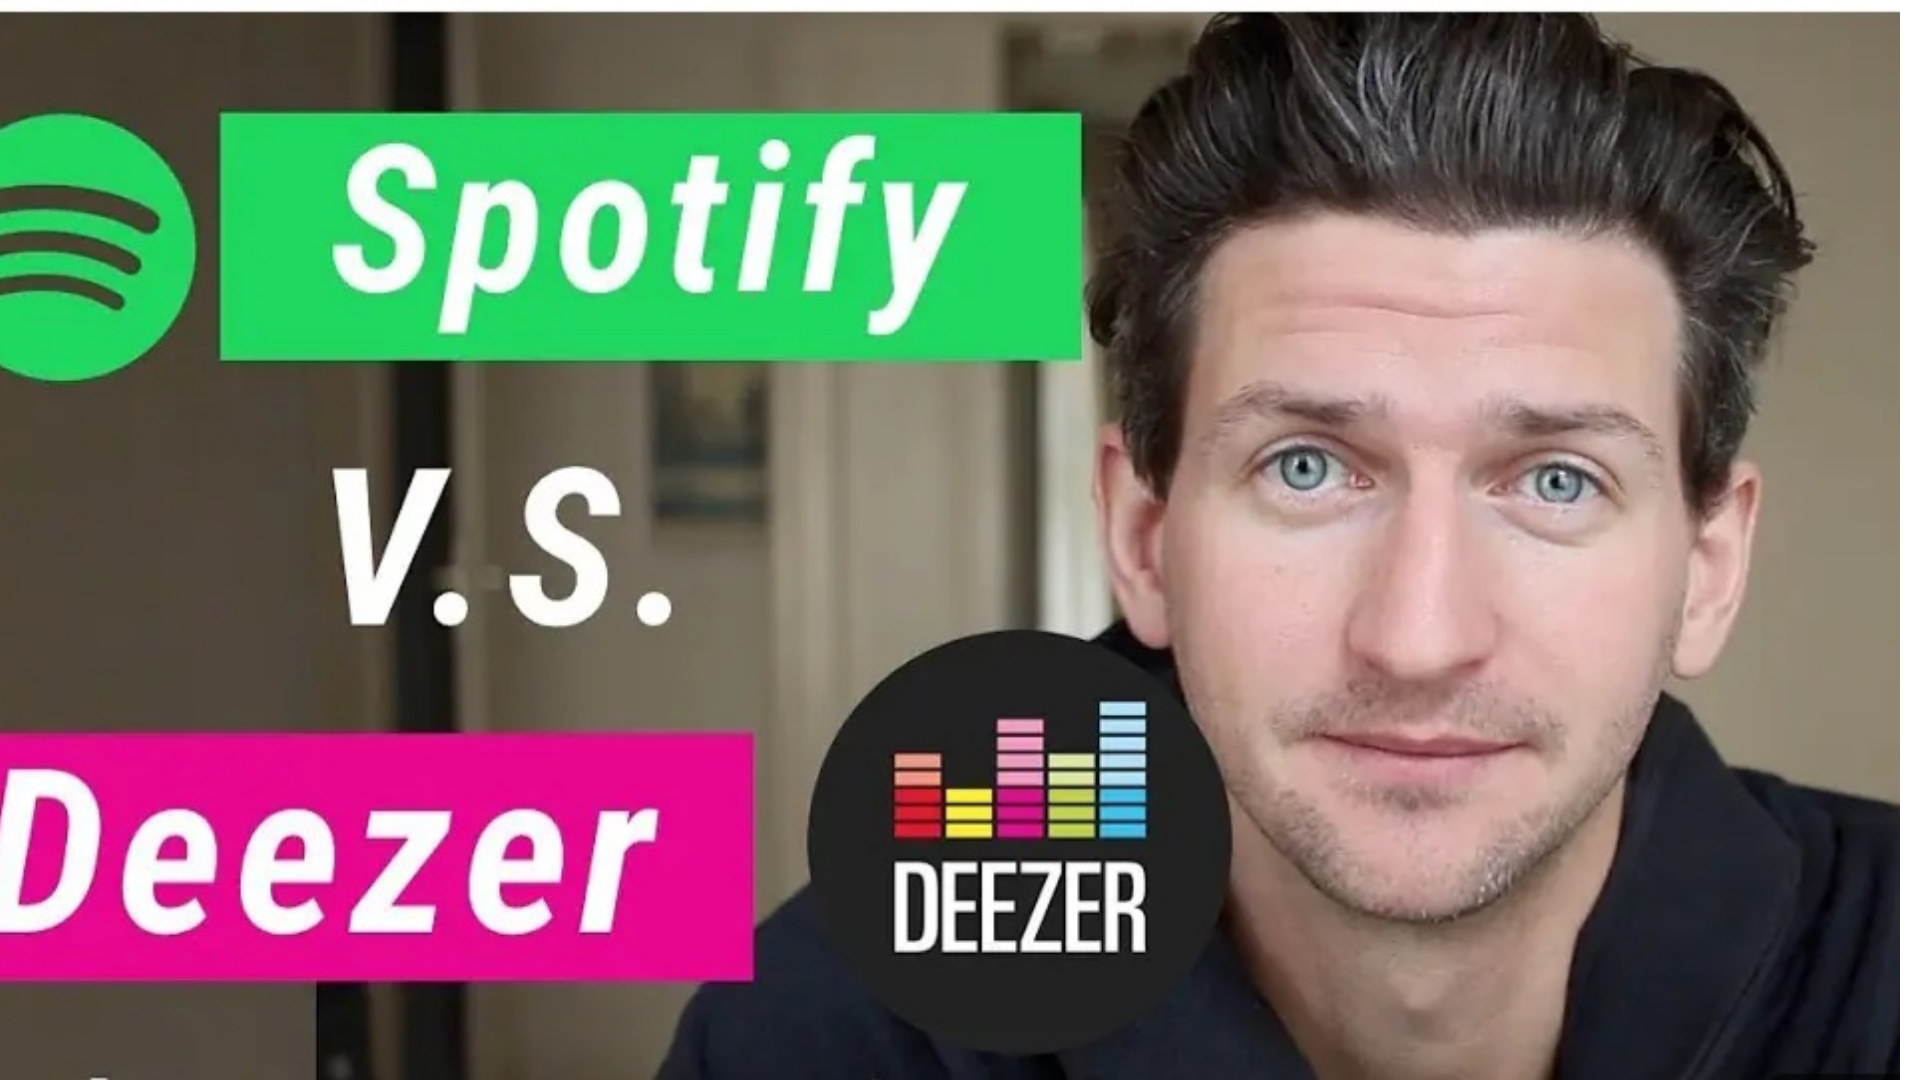 Comparison between Deezer vs Spotify